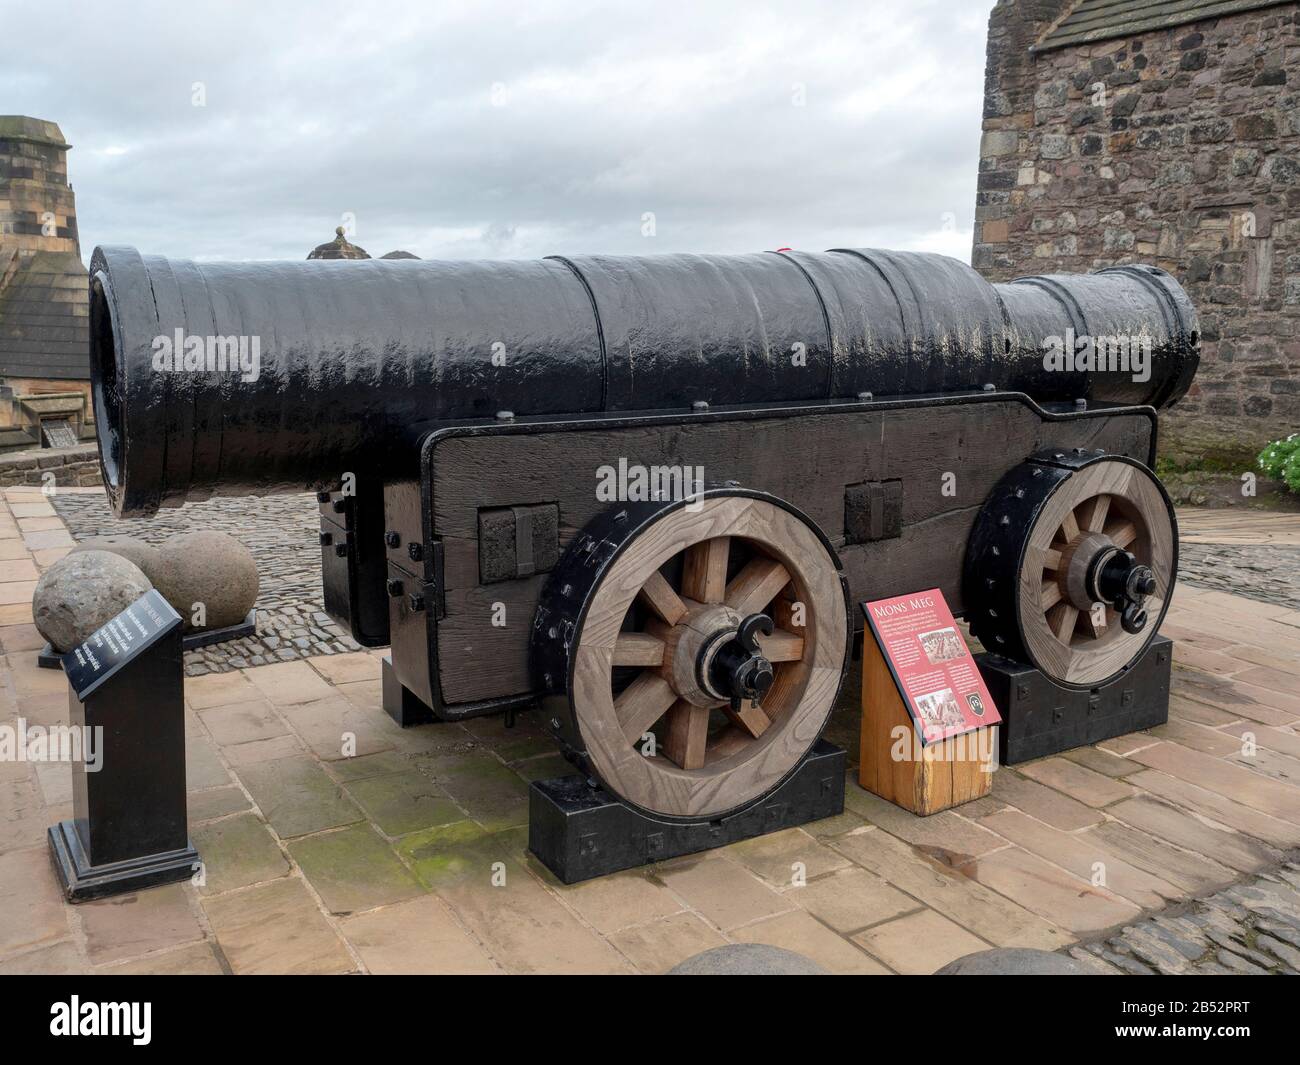 Mons Meg es una bomba medieval, un tipo de cañón, situado en el Castillo de Edimburgo en Escocia. Foto de stock